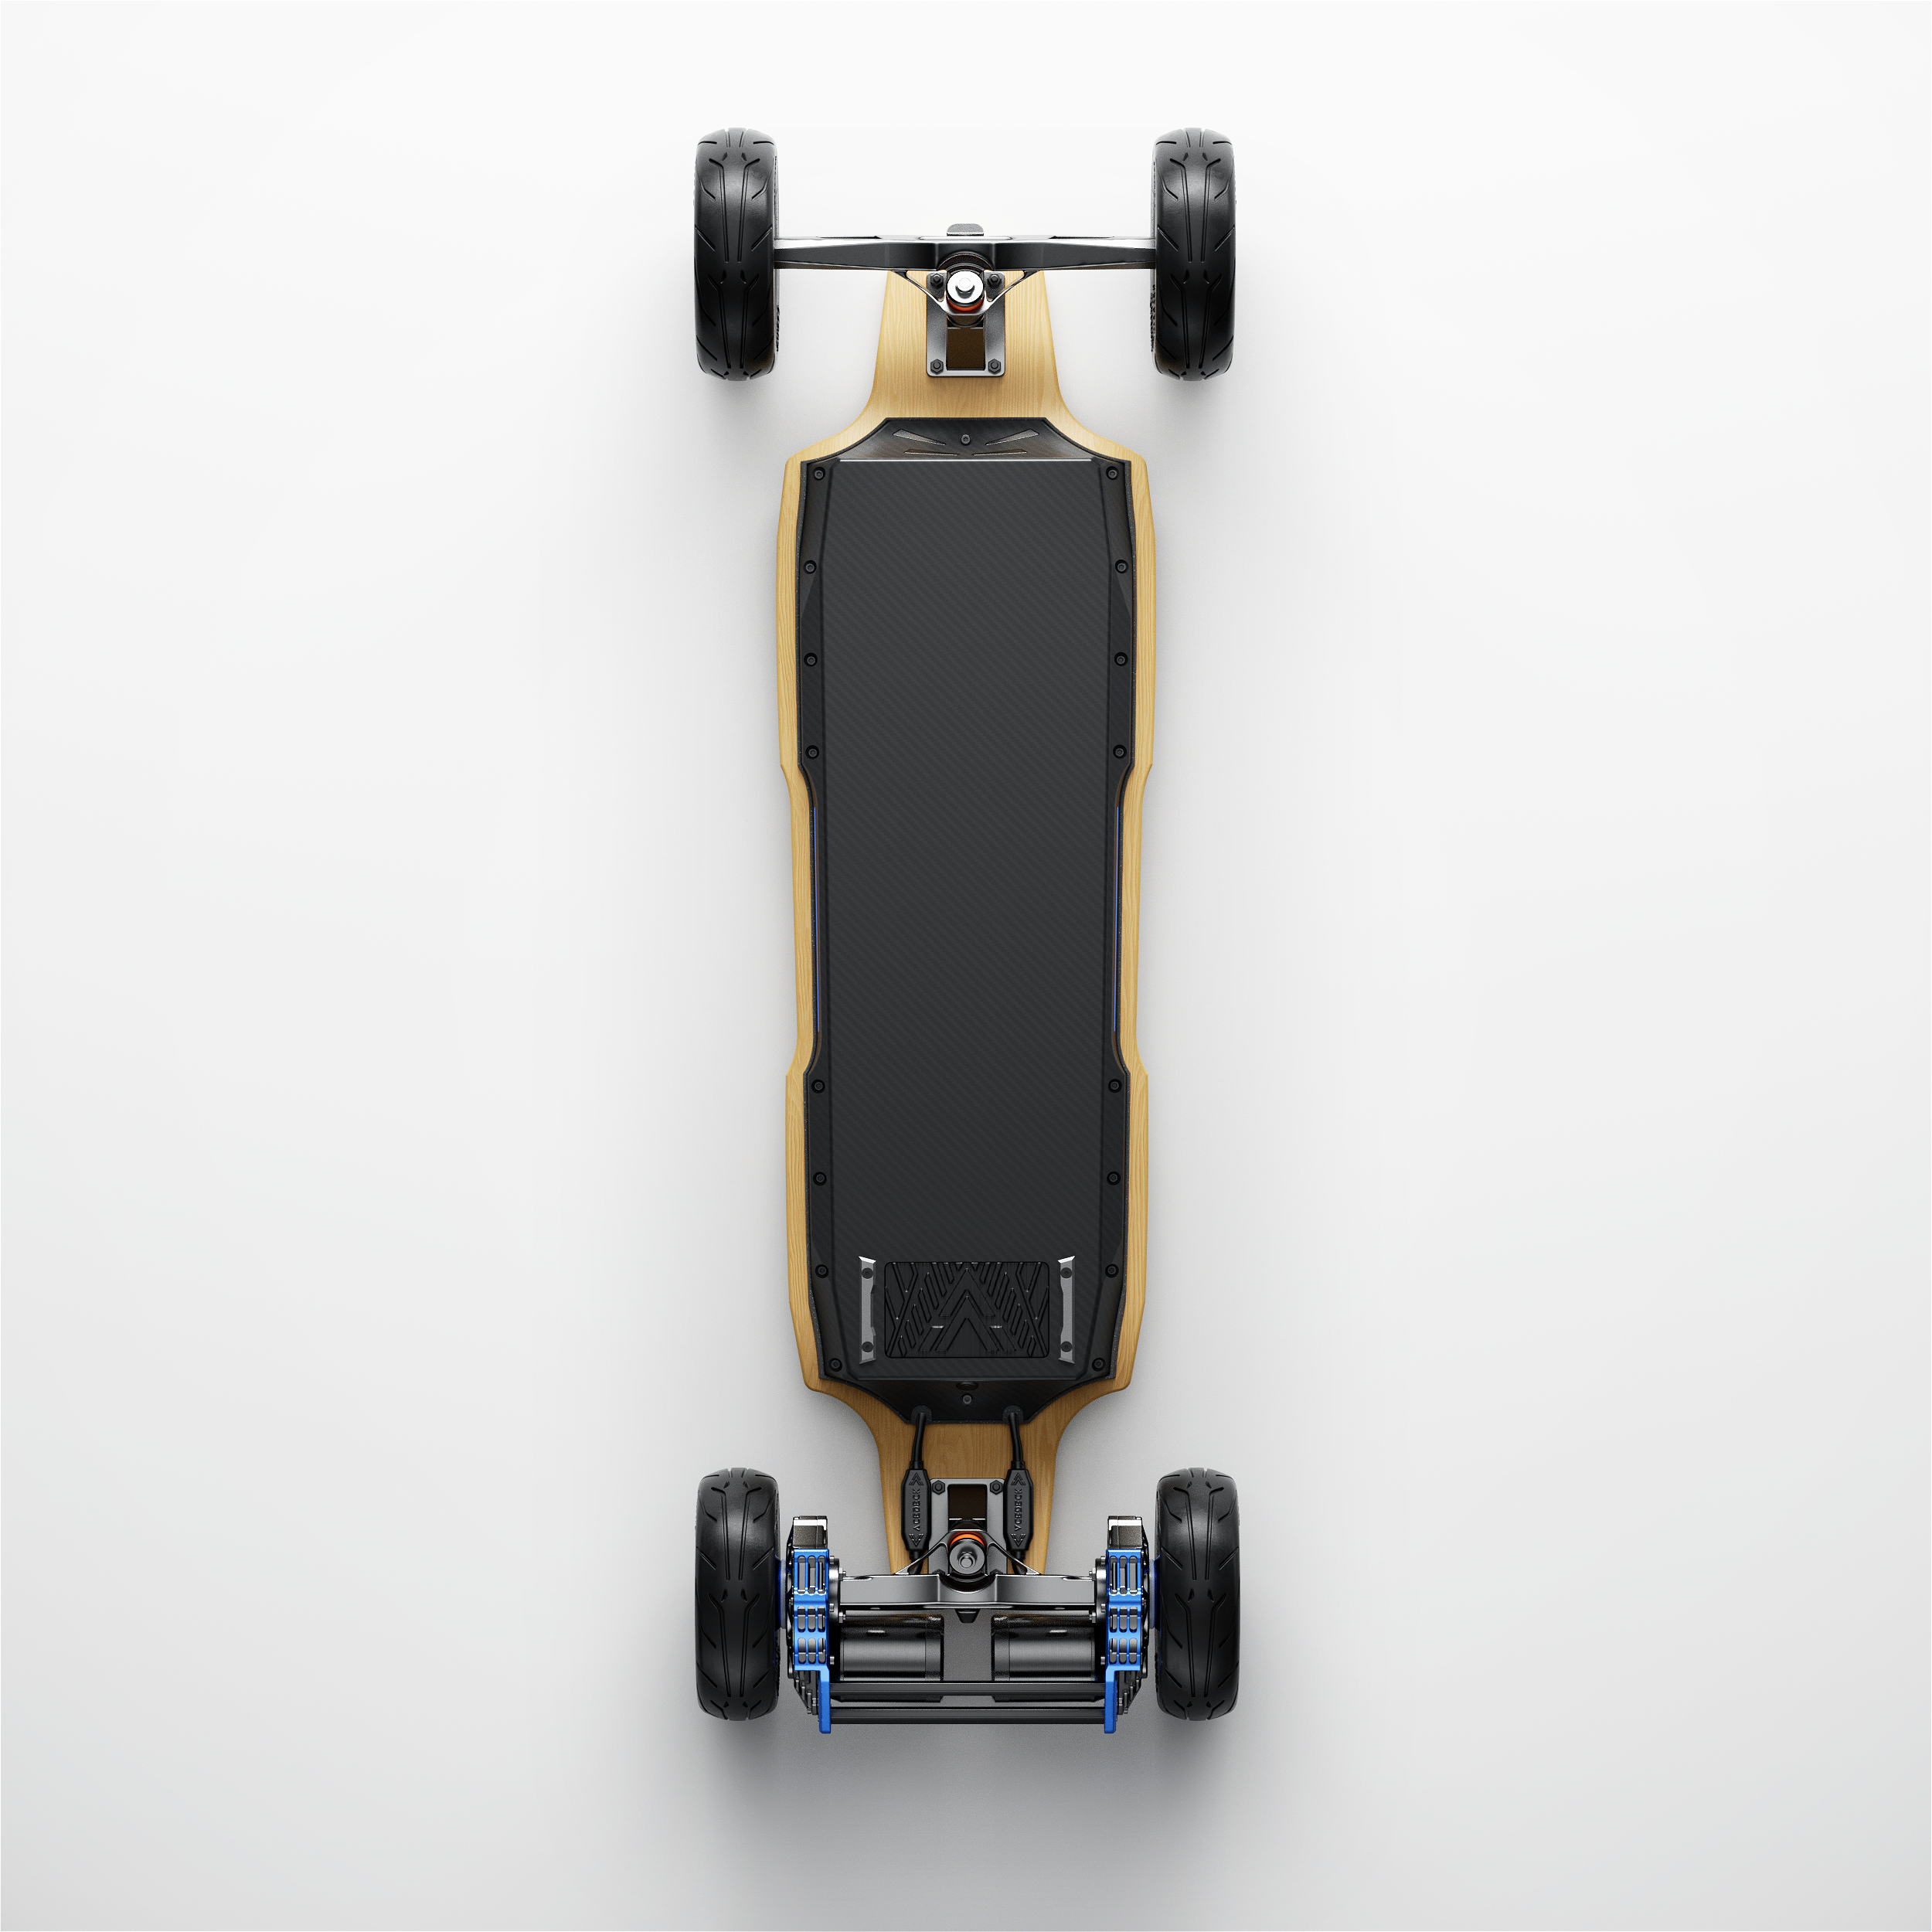 Acedeck® Nomad N1 Electric Skateboard